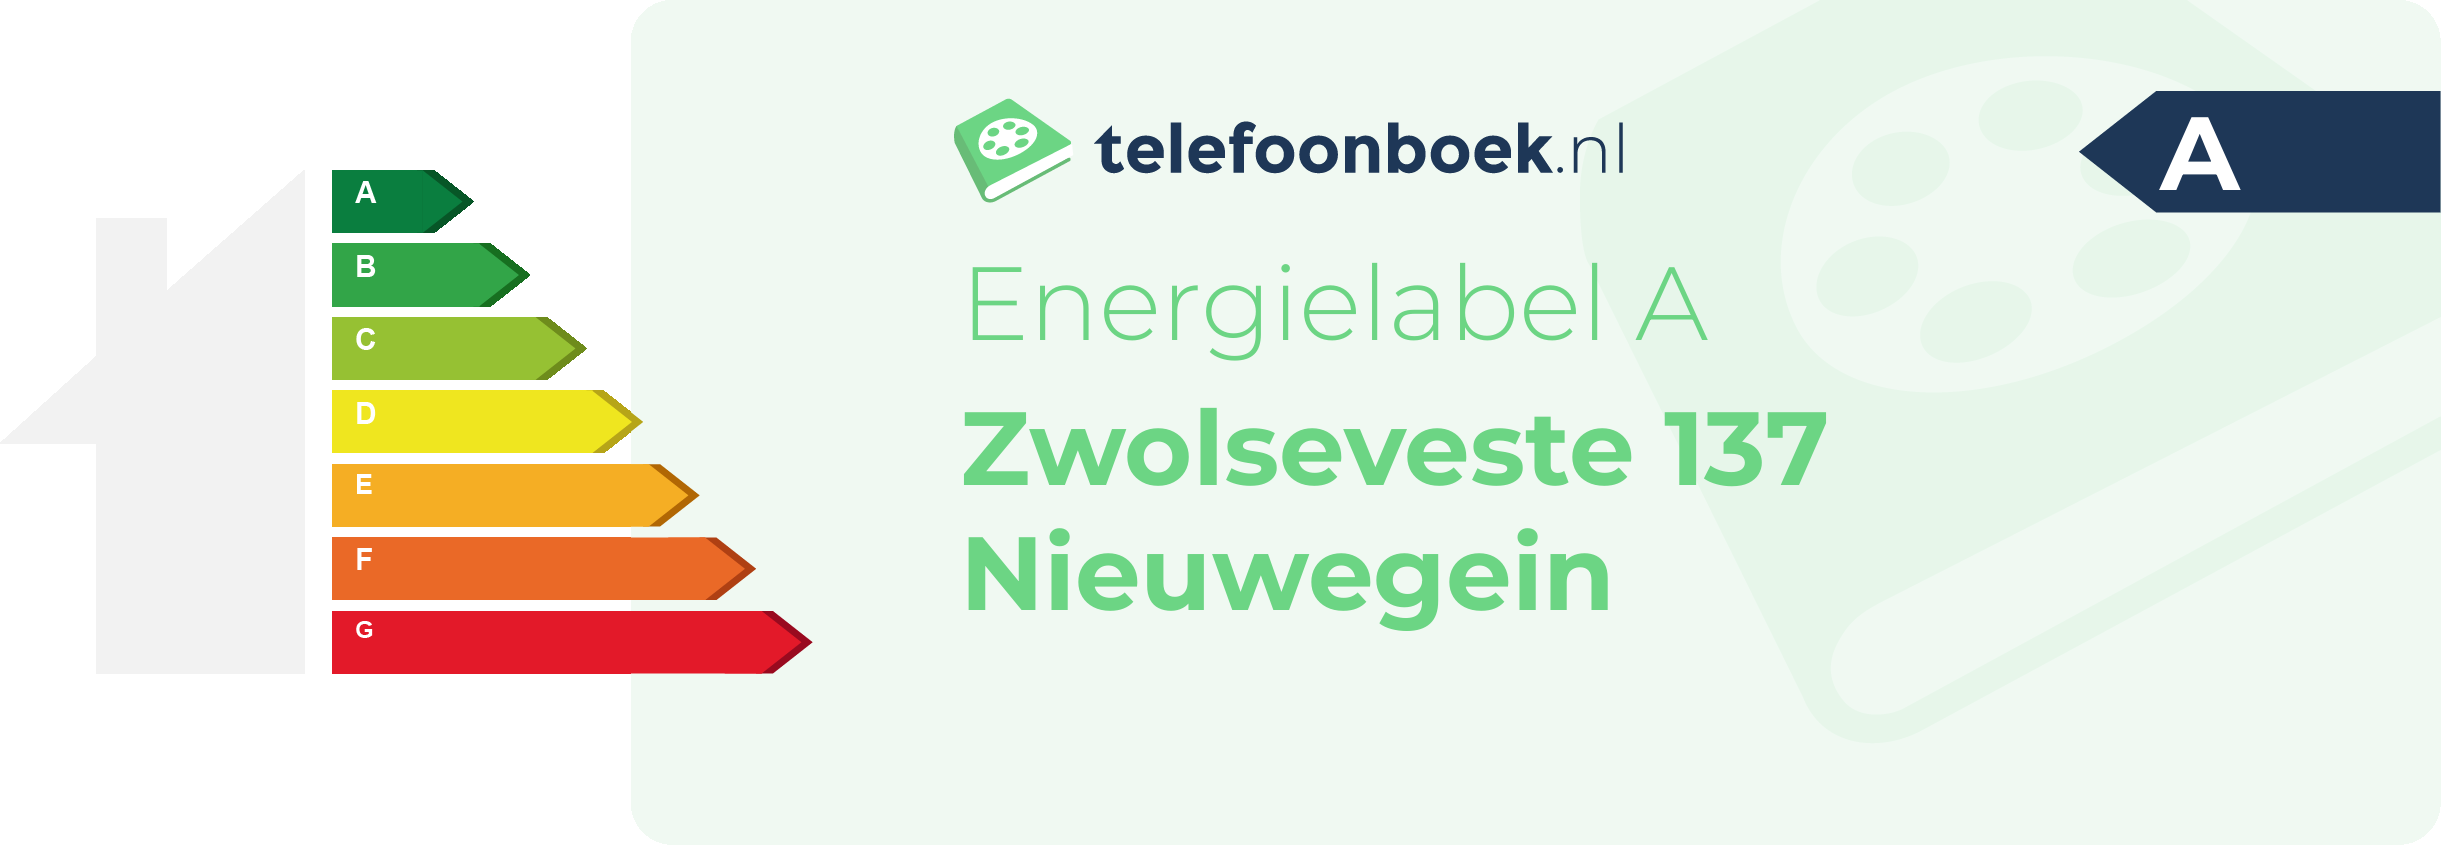 Energielabel Zwolseveste 137 Nieuwegein